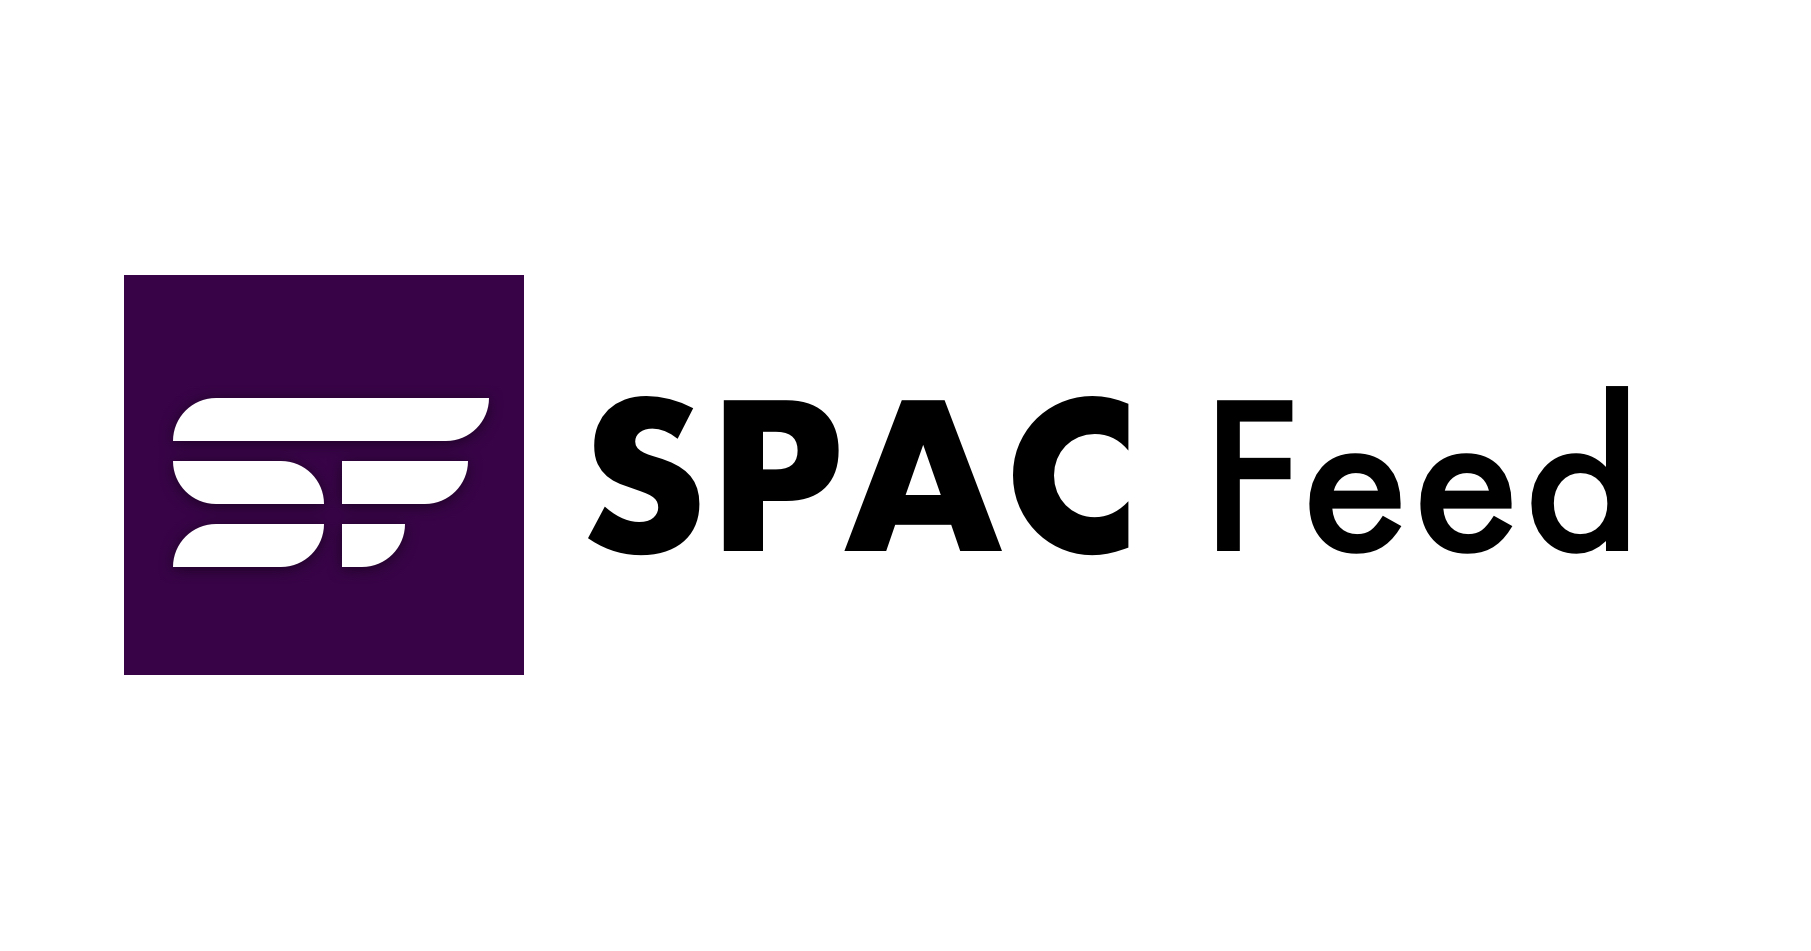 نرم افزار snafus فراوان است، Nuro برش های بیشتری ایجاد می کند و VinFast مسیر SPAC را در پیش می گیرد - TechCrunch | خوراک SPAC